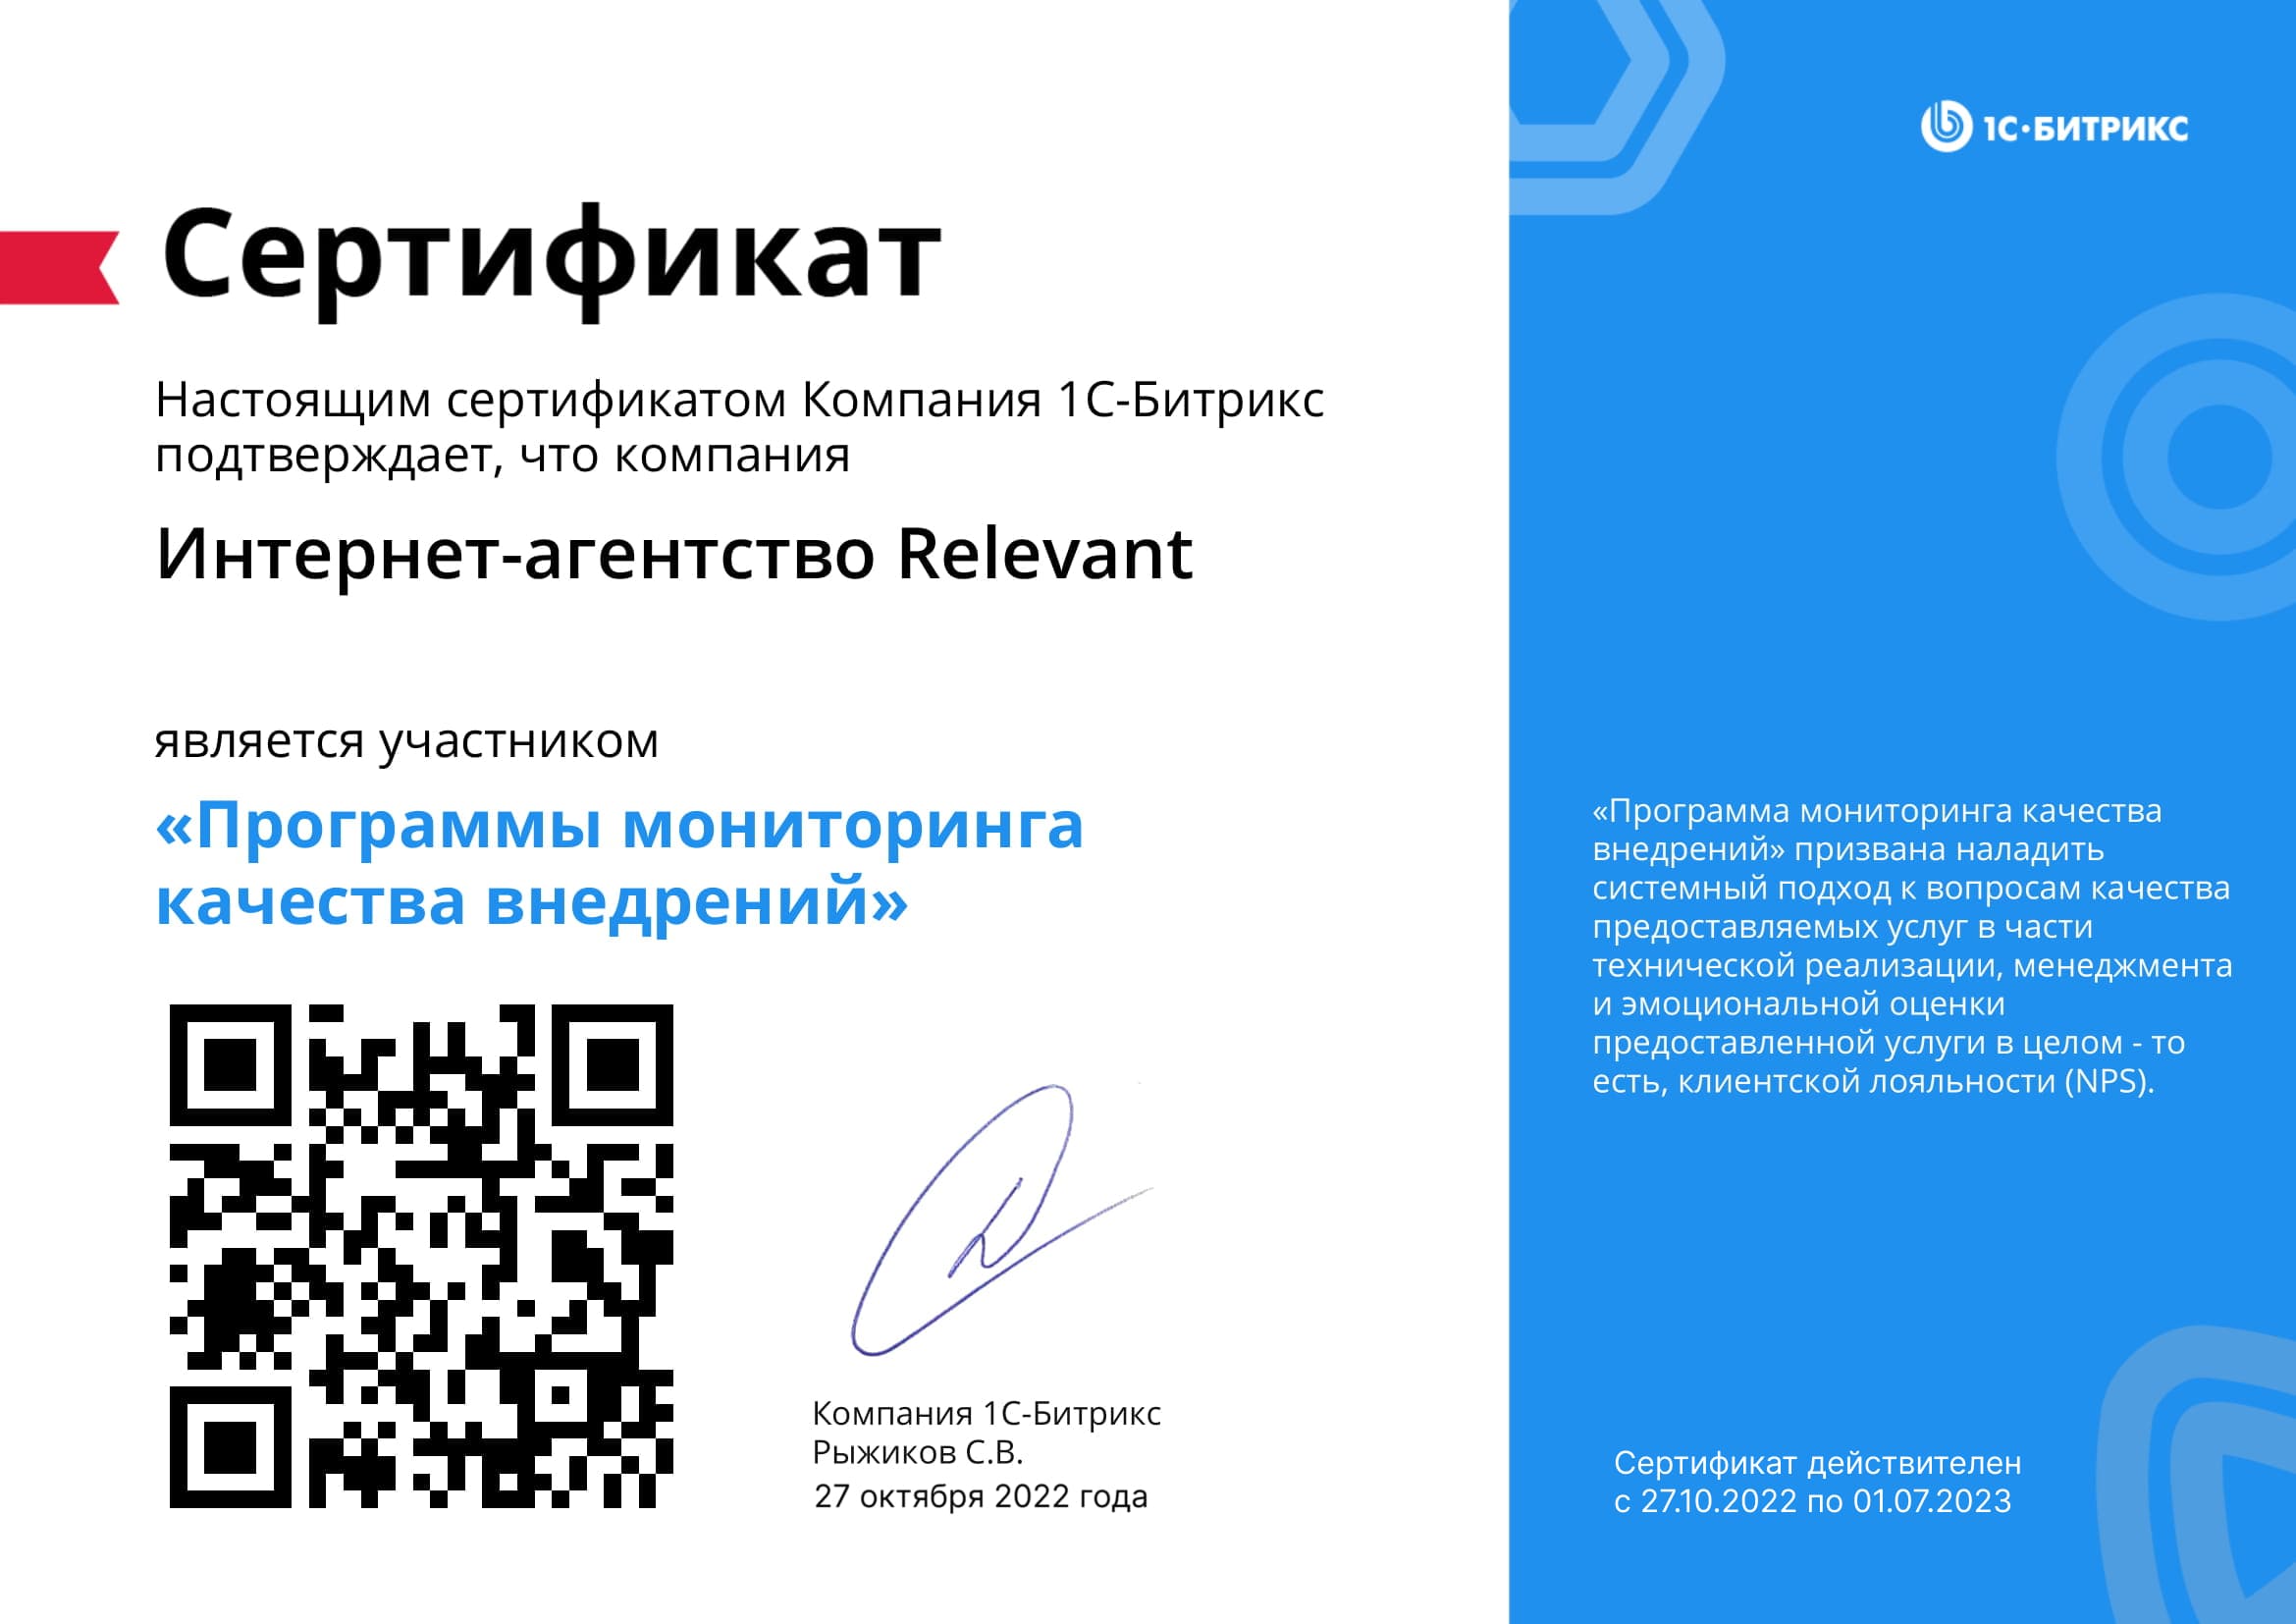 Сертификат об участии в "Программе мониторинга качества внедрений"